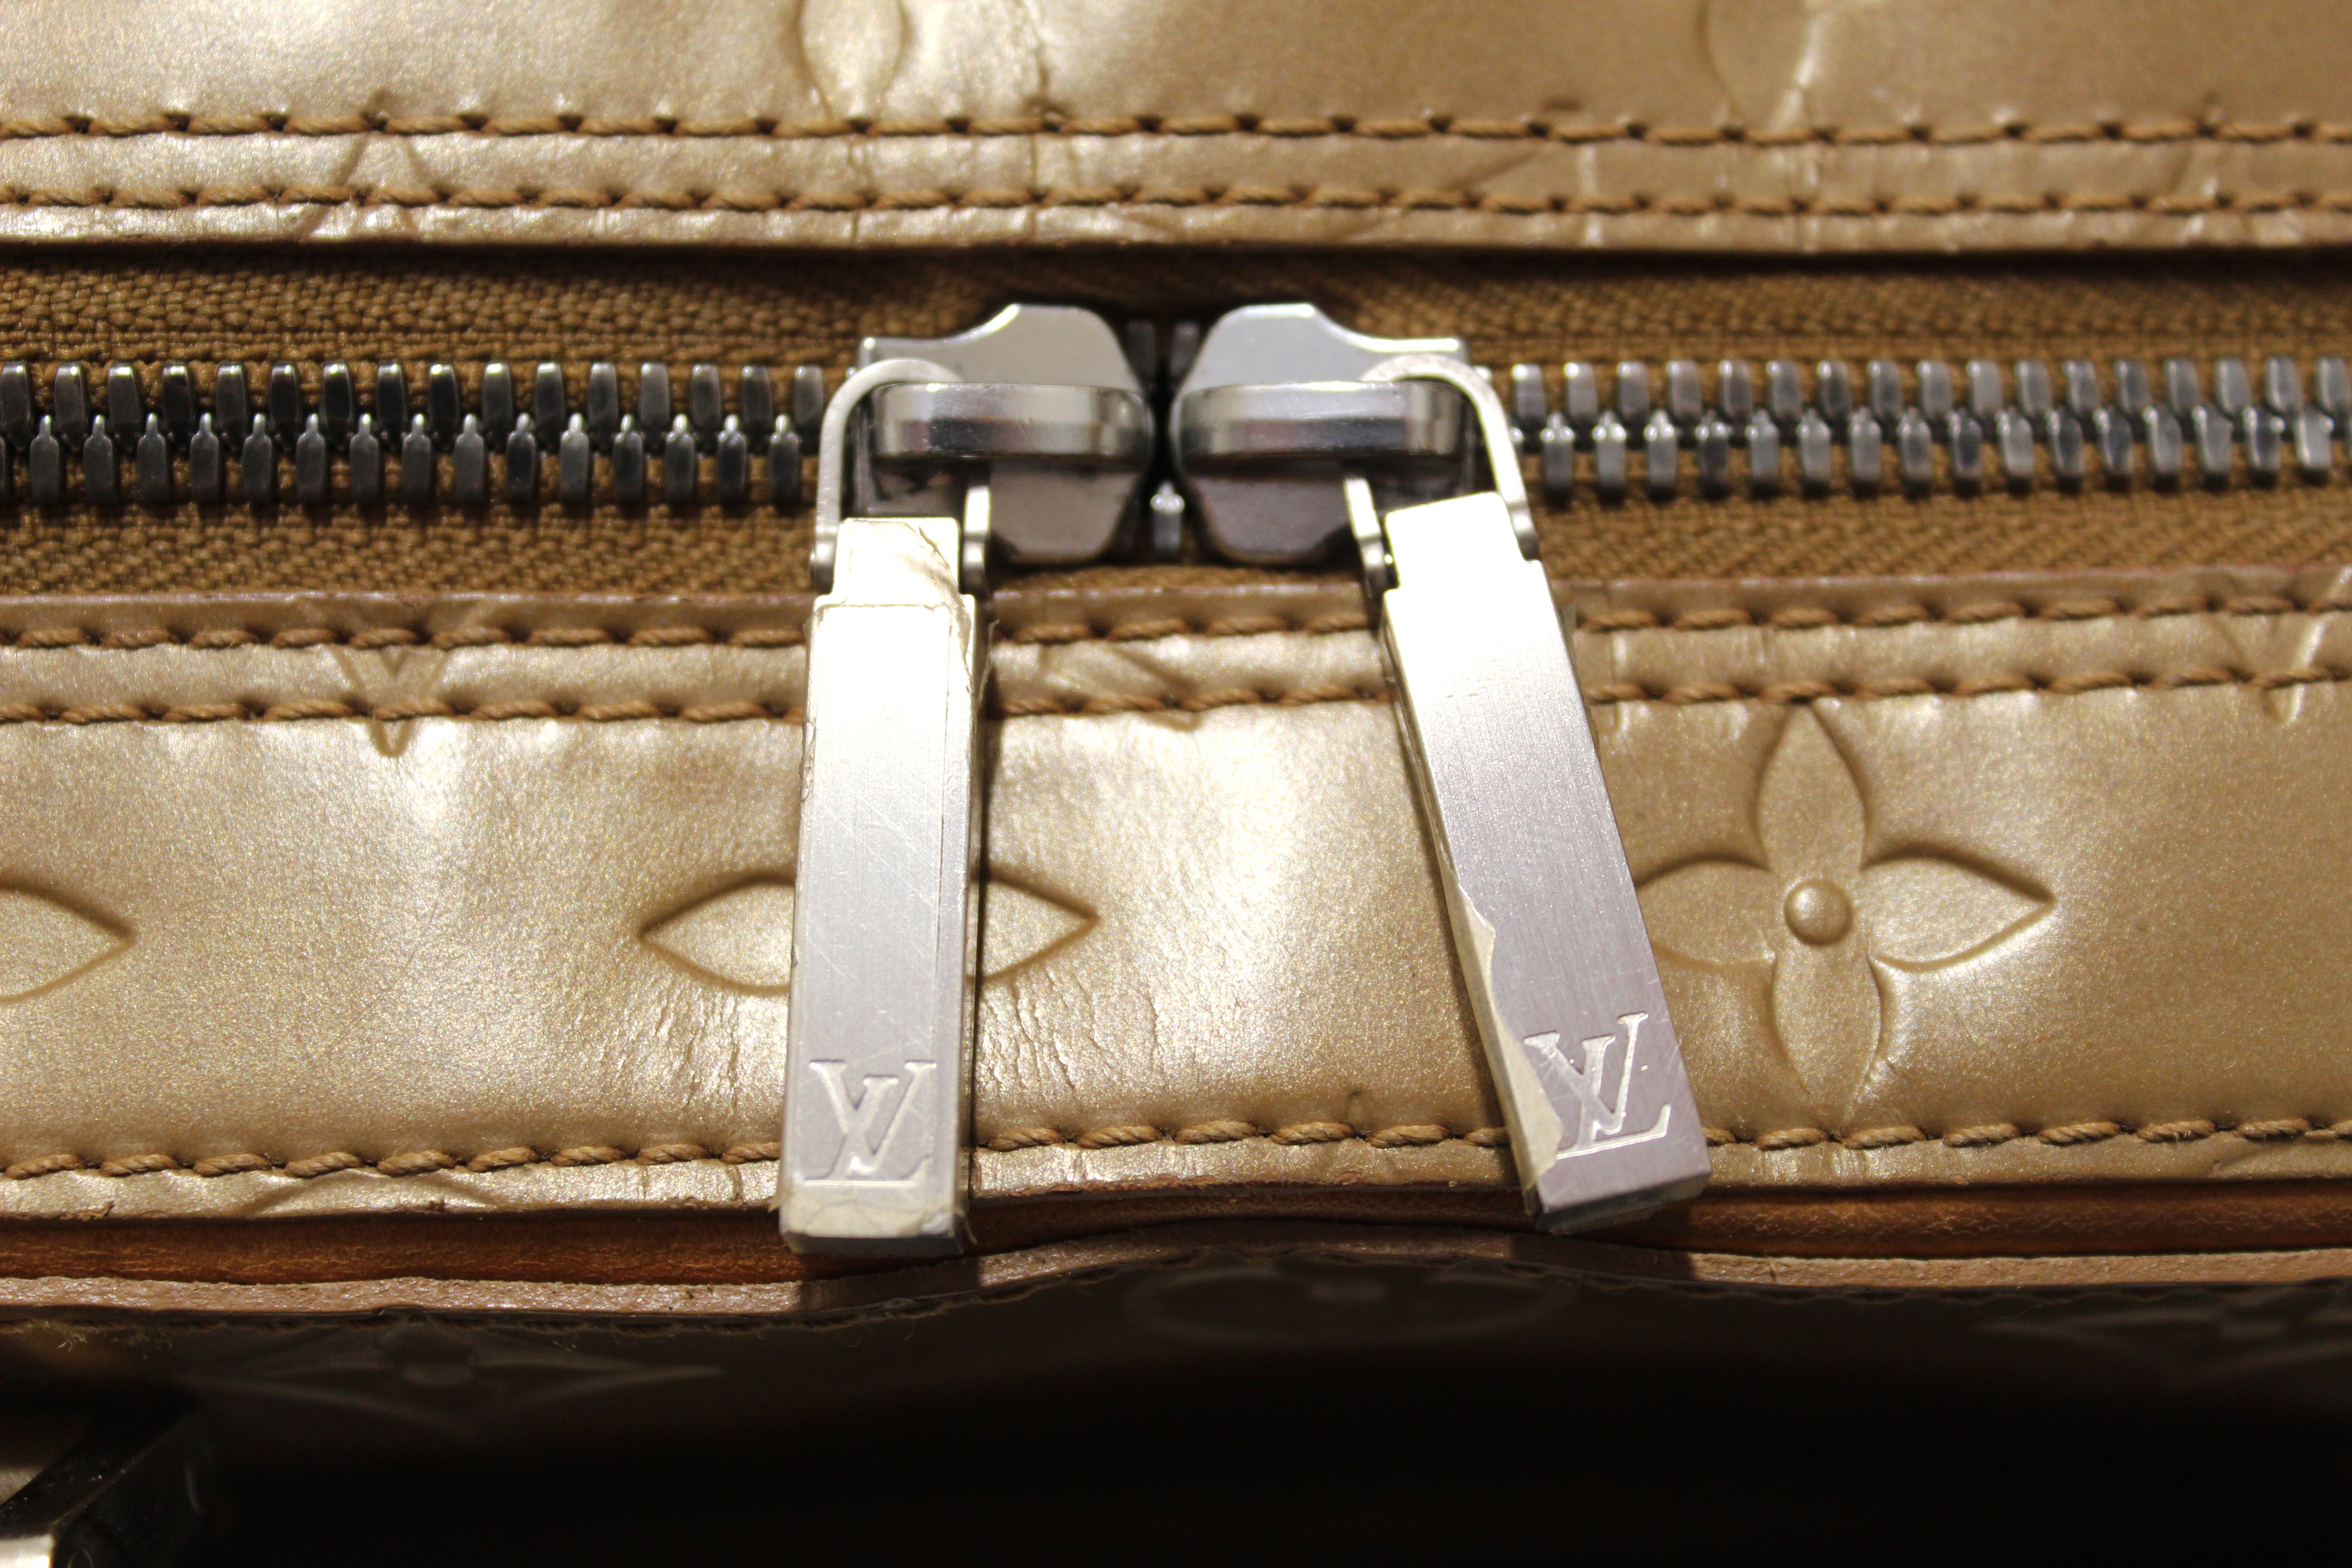 Authentic Louis Vuitton Gold Mat Monogram Vernis Shelton Handbag